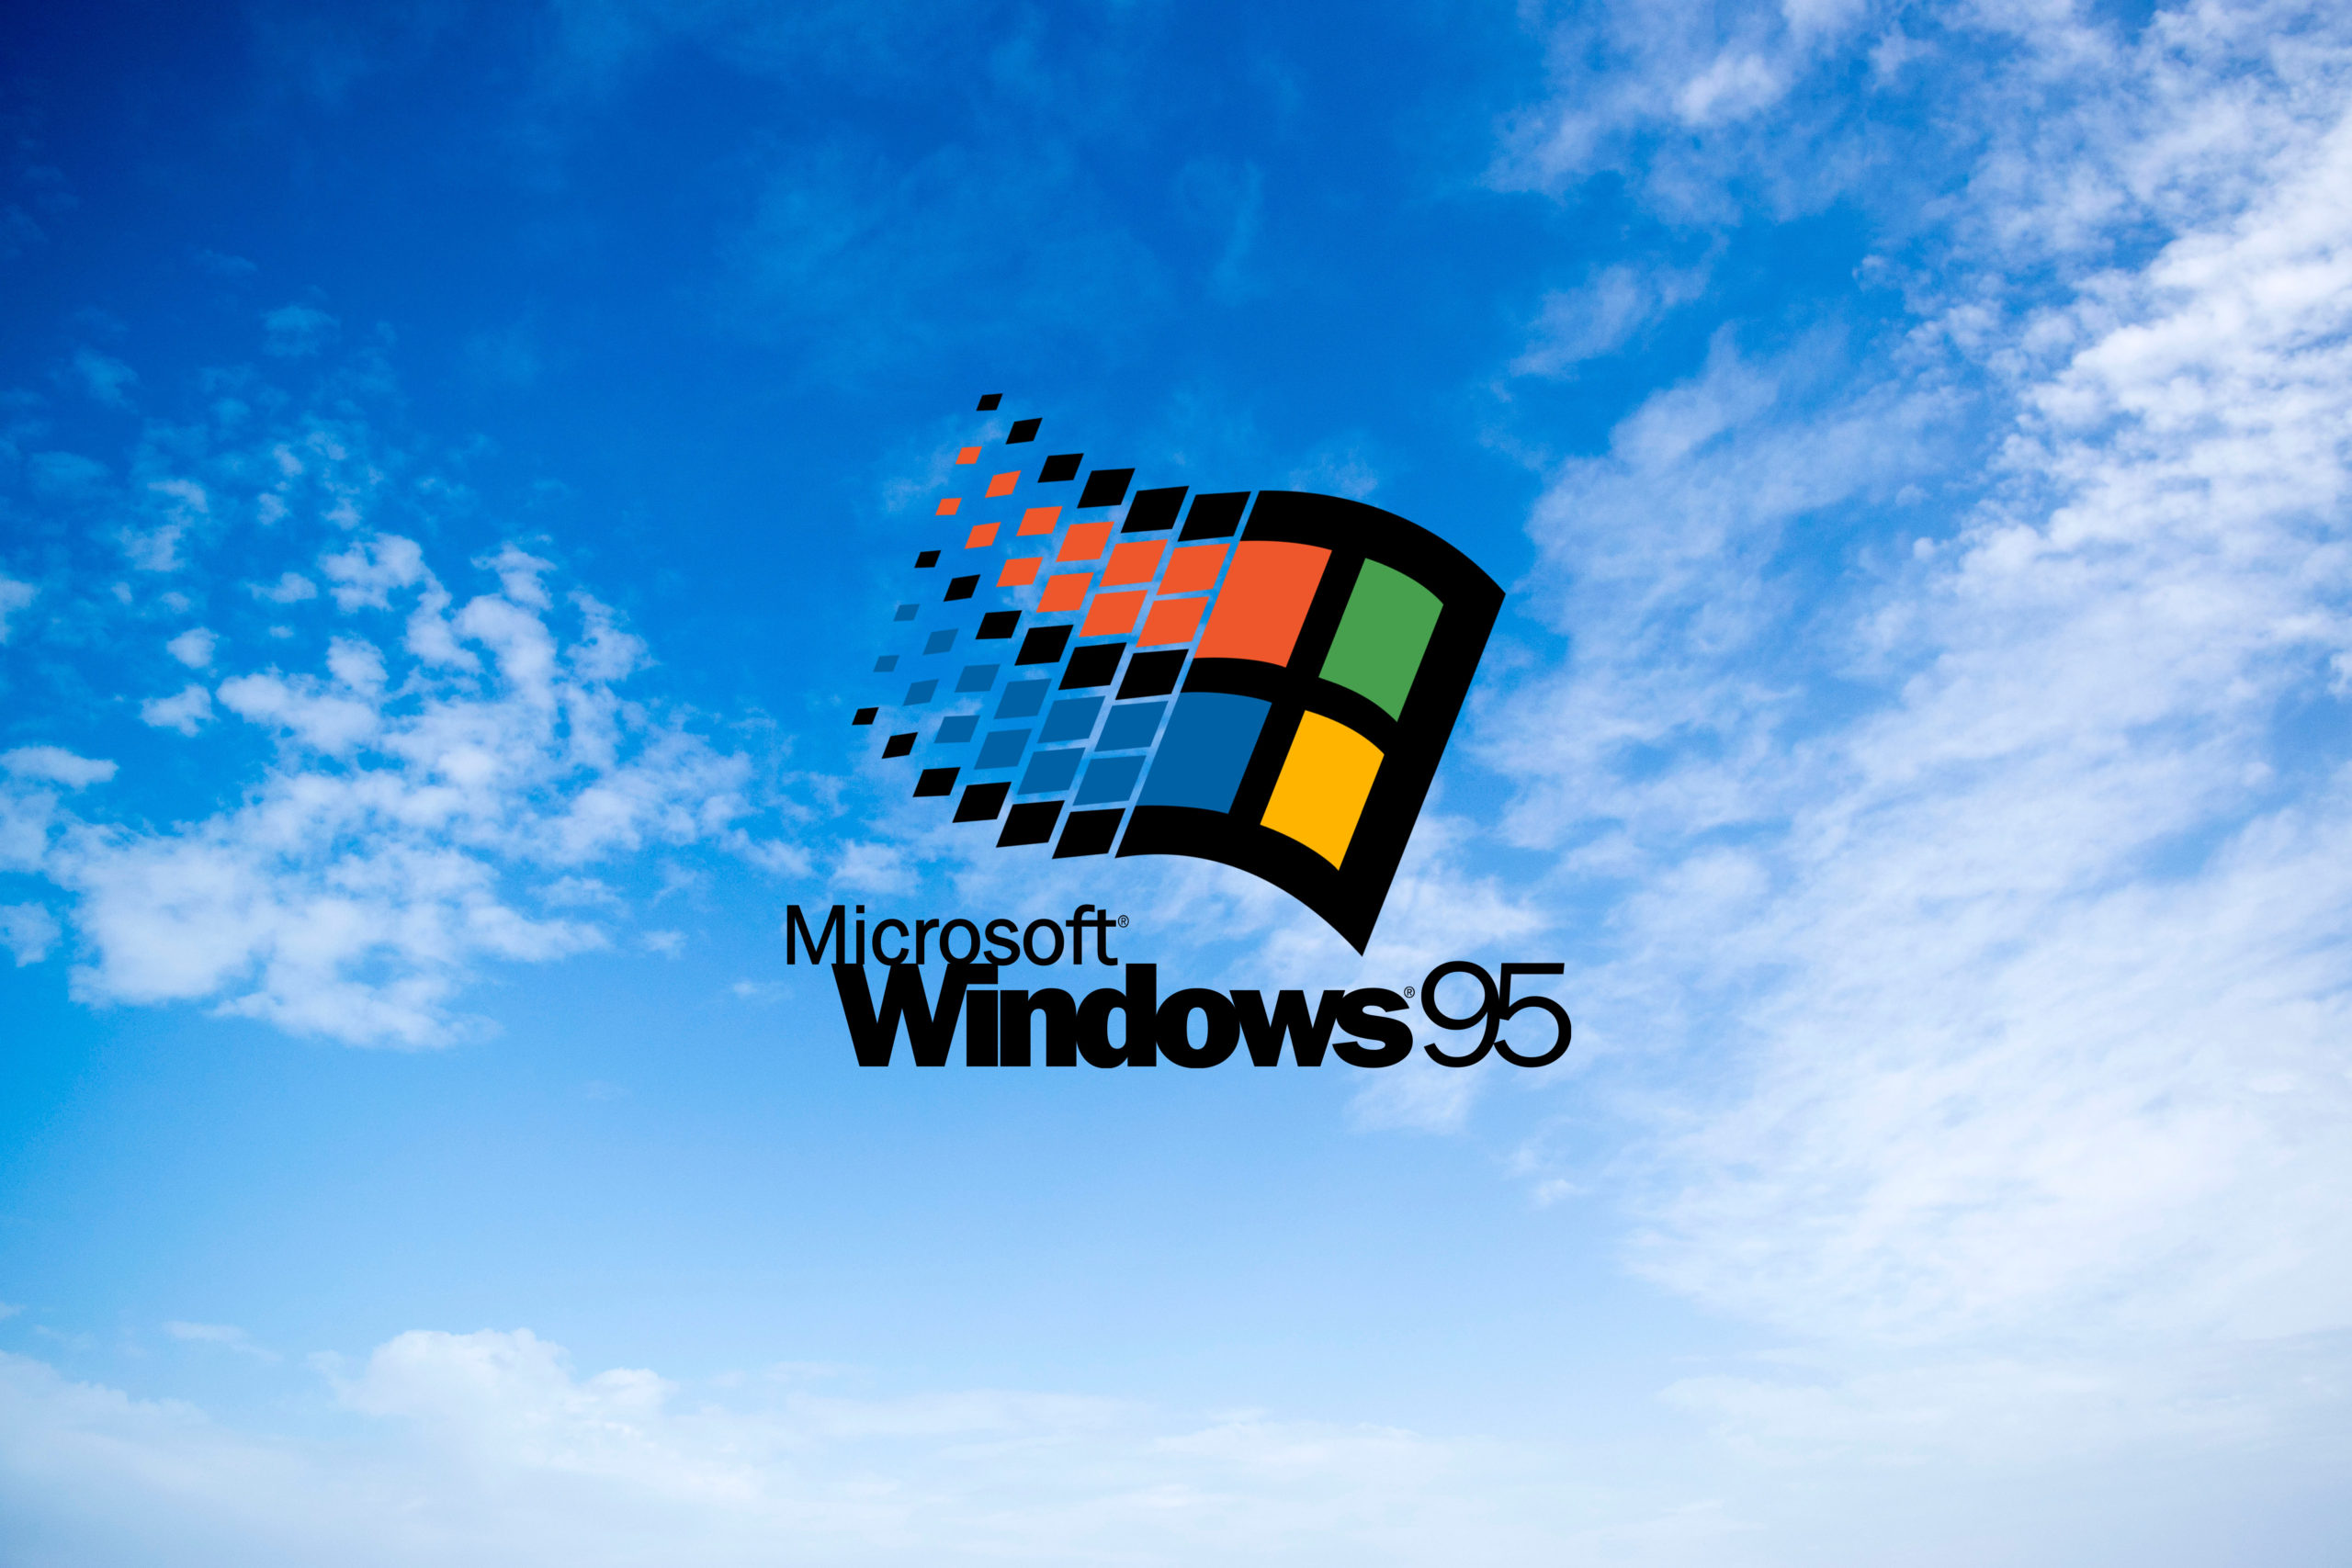 Tổng hợp 50 hình nền win 10 đẹp nhất  Hình nền máy tính  Windows  wallpaper Wallpaper windows 10 Hd wallpapers for laptop